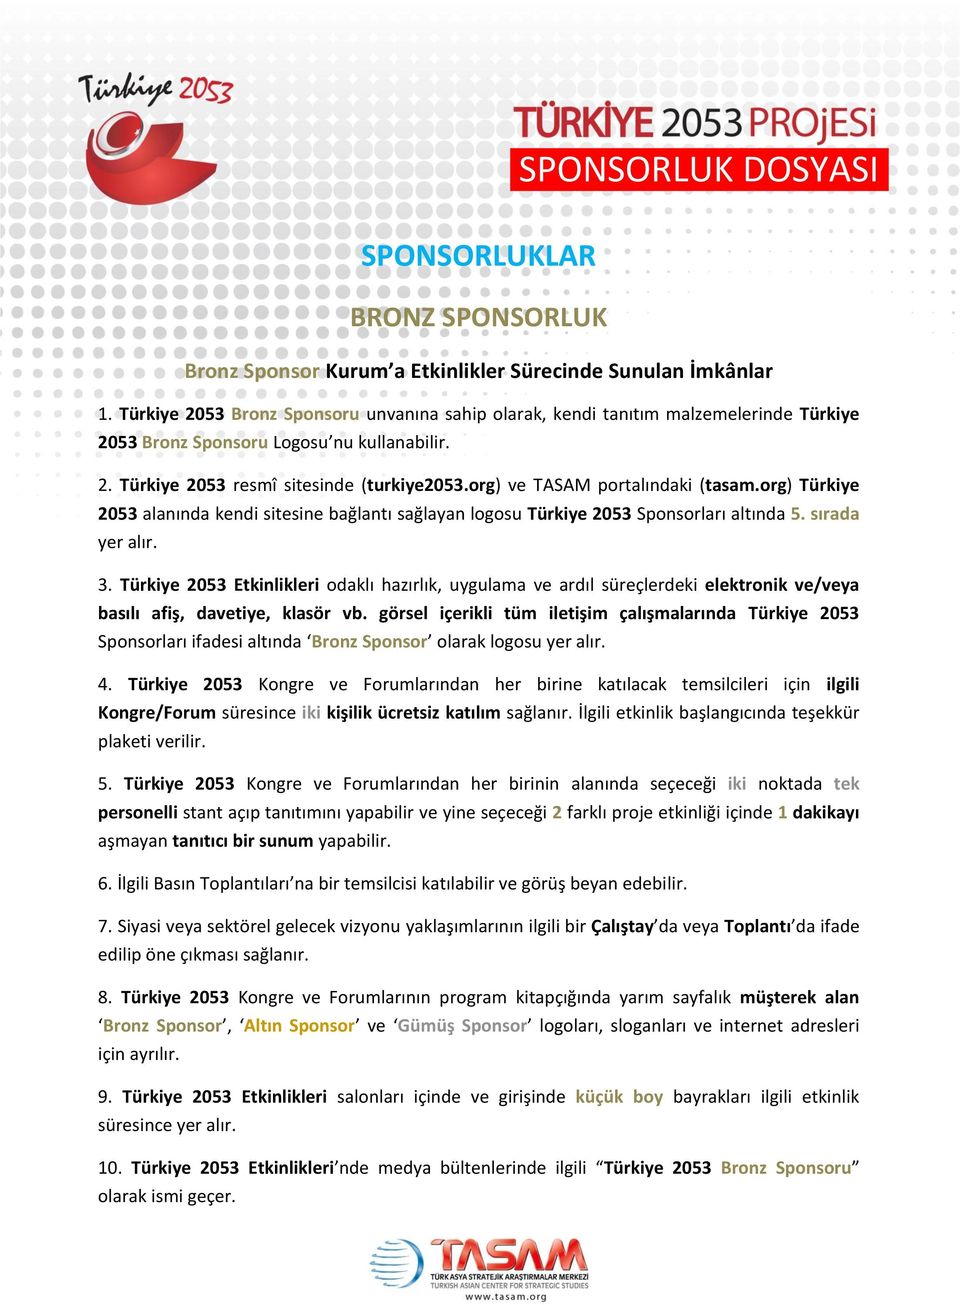 org) ve TASAM portalındaki (tasam.org) Türkiye 2053 alanında kendi sitesine bağlantı sağlayan logosu Türkiye 2053 Sponsorları altında 5. sırada 3.